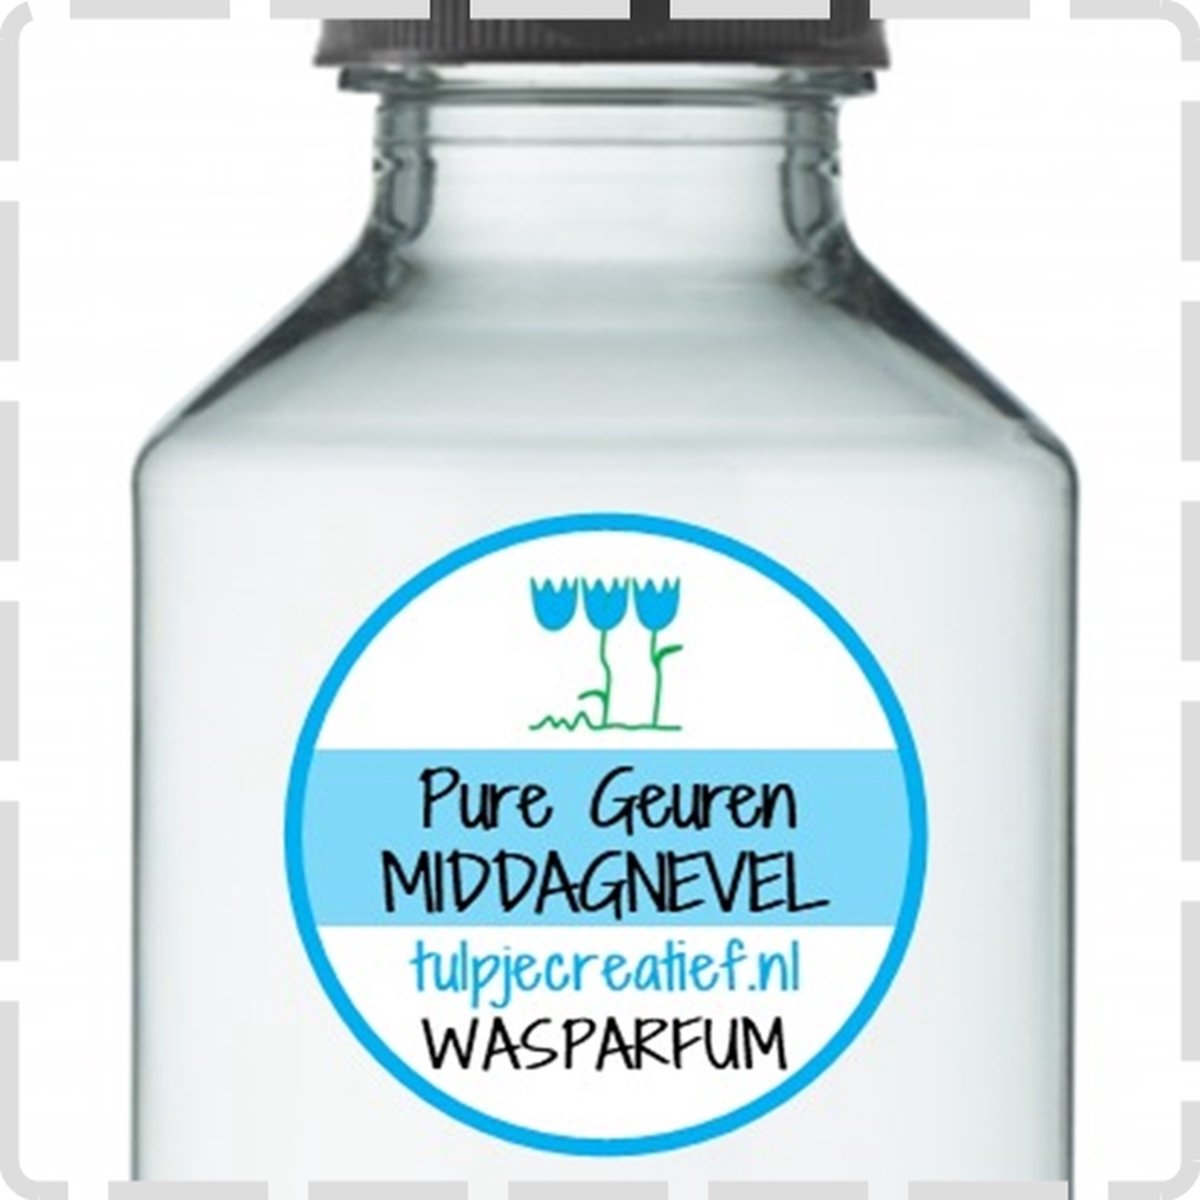 Pure Geuren - Wasparfum - Middagnevel - 100 ml - 20 wasbeurten